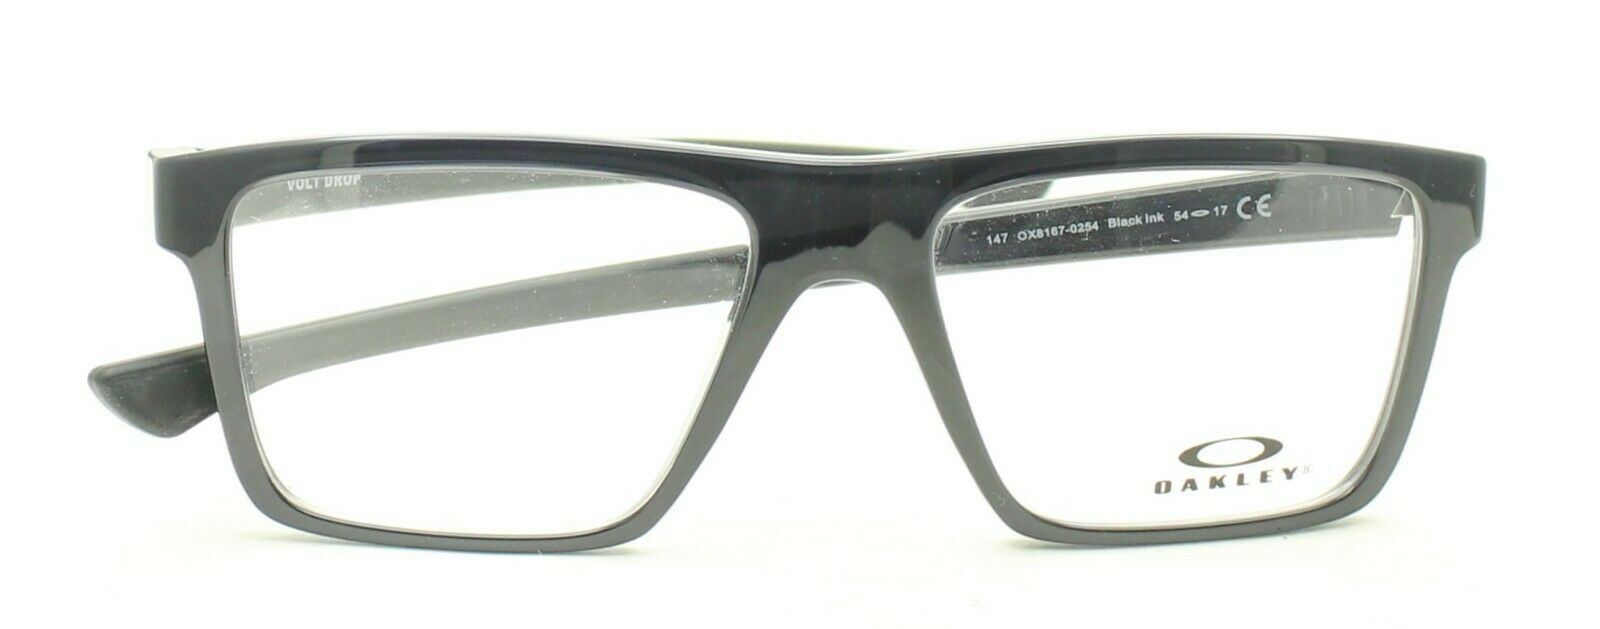 OAKLEY VOLT DROP OX8167-0254 Eyewear FRAMES RX Optical Eyeglasses Glasses -  New - GGV Eyewear